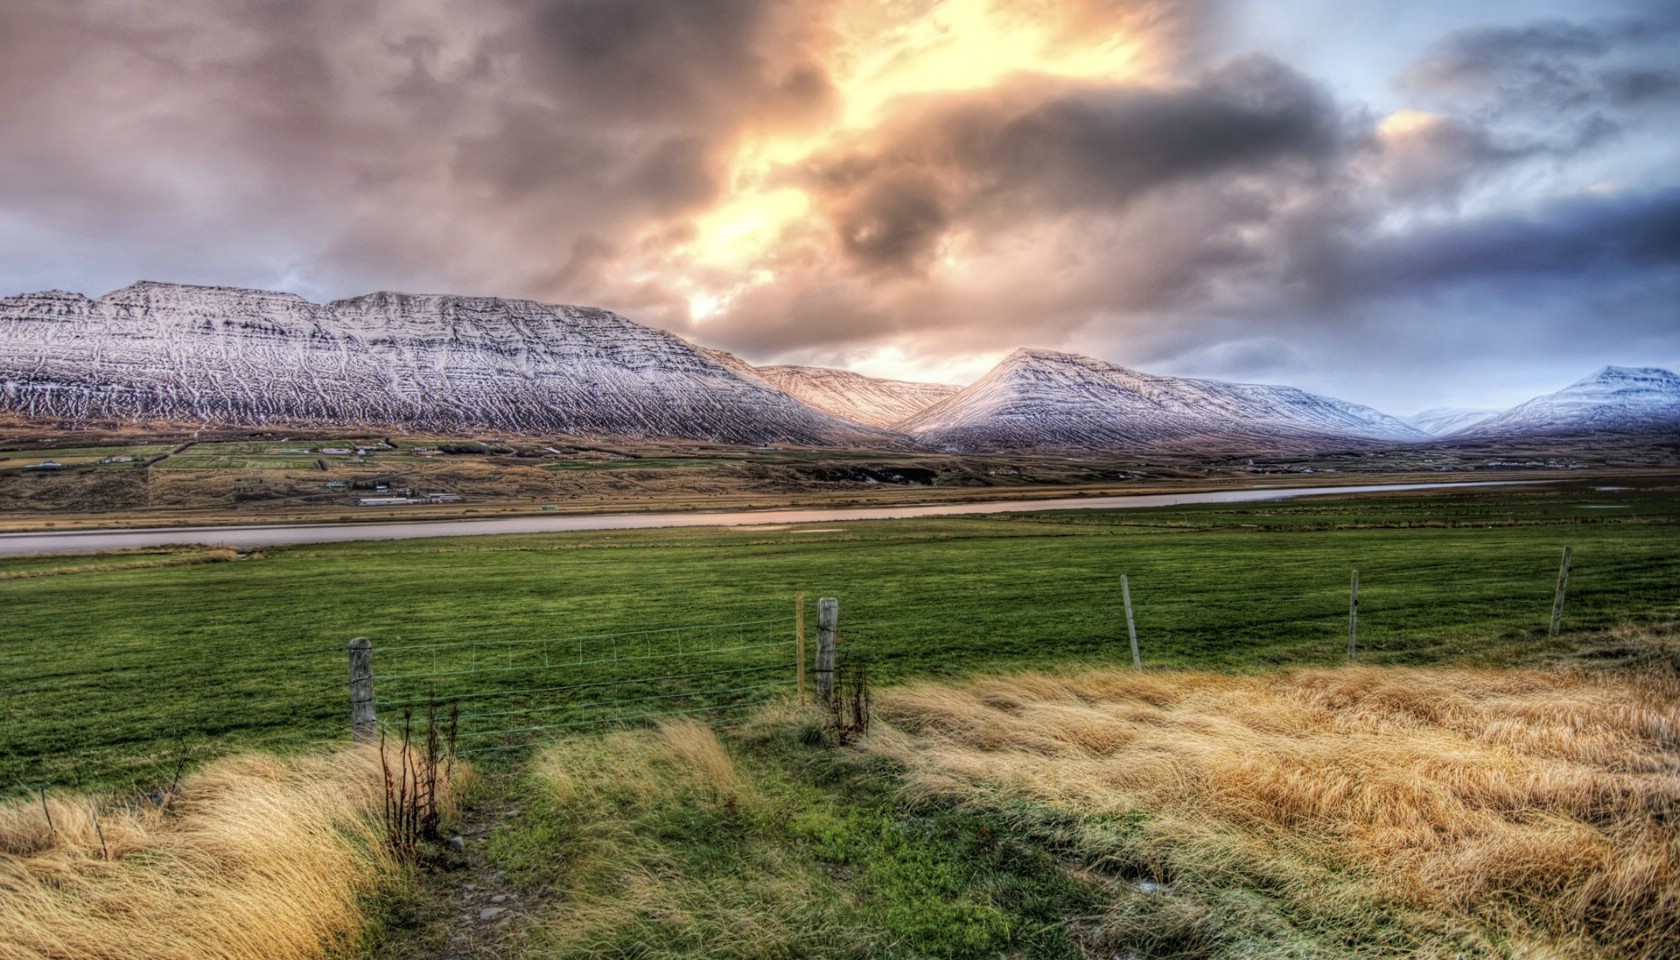 壁纸1680x960 HDR Iceland Landscape Exploring the Valleys Beyond the Fjords of Akureyri壁纸 HDR 冰岛风光宽屏壁纸壁纸 HDR 冰岛风光宽屏壁纸图片 HDR 冰岛风光宽屏壁纸素材 人文壁纸 人文图库 人文图片素材桌面壁纸